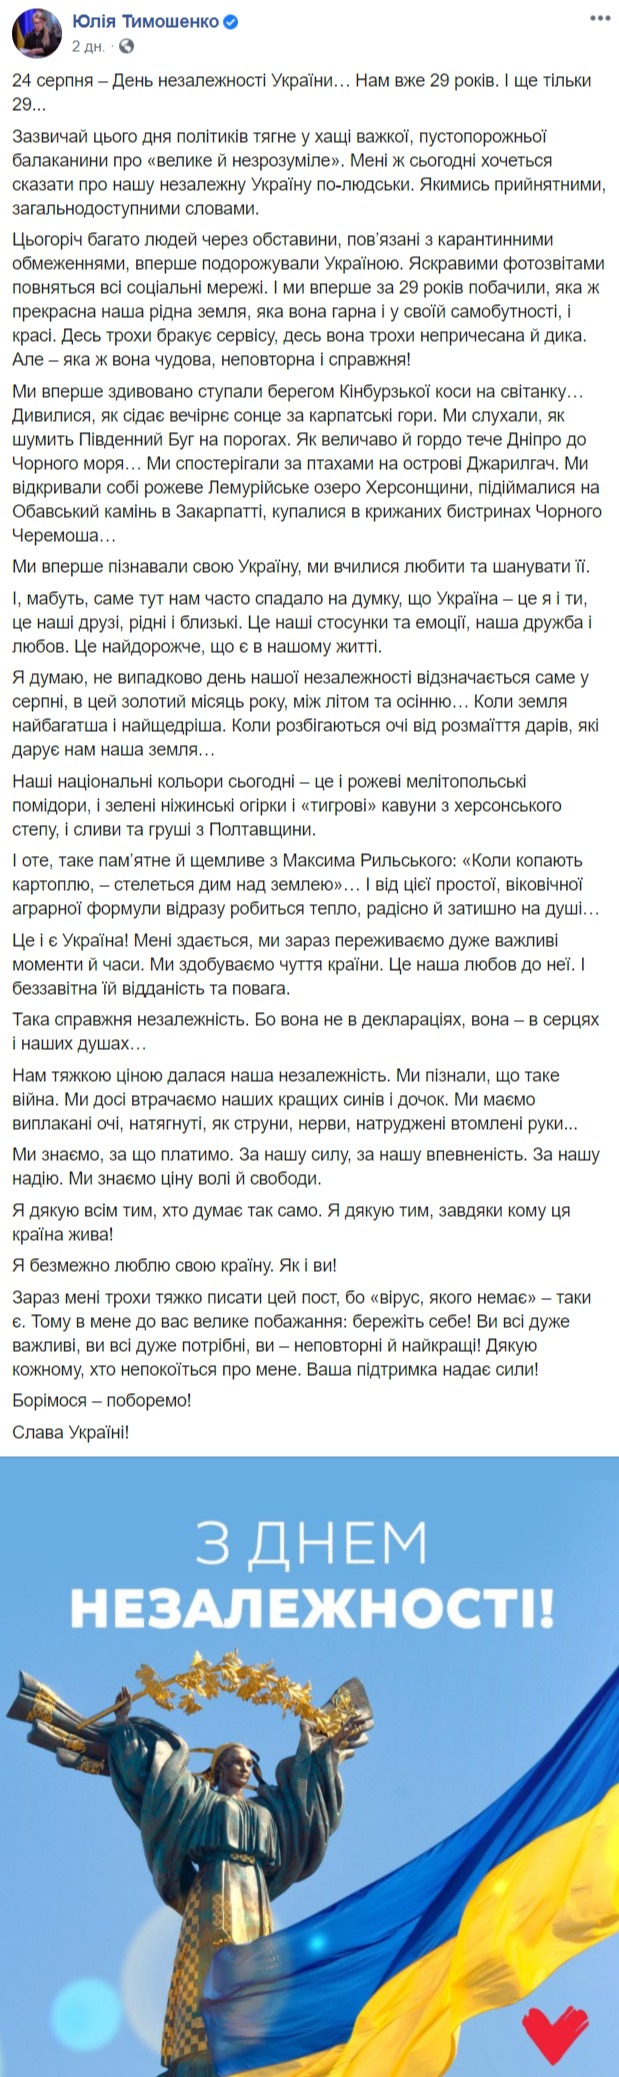 Юлия Тимошенко фейсбук